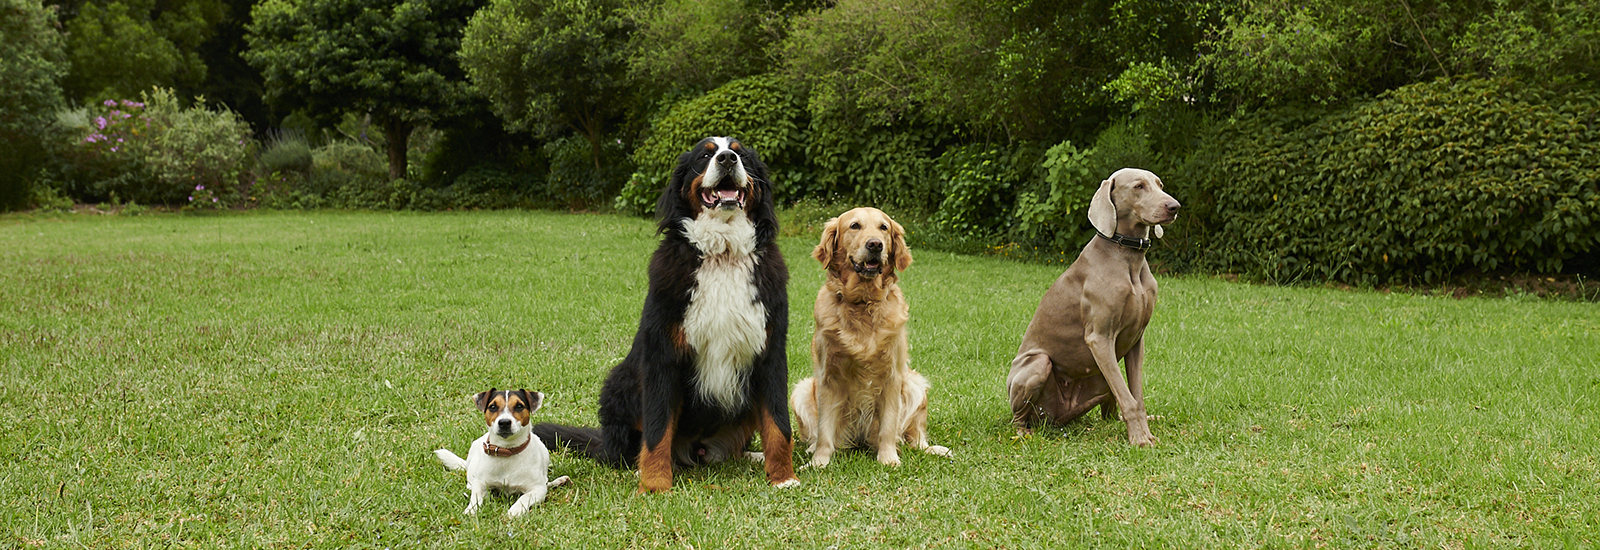 Vier Hunde sitzen auf einer Wiese